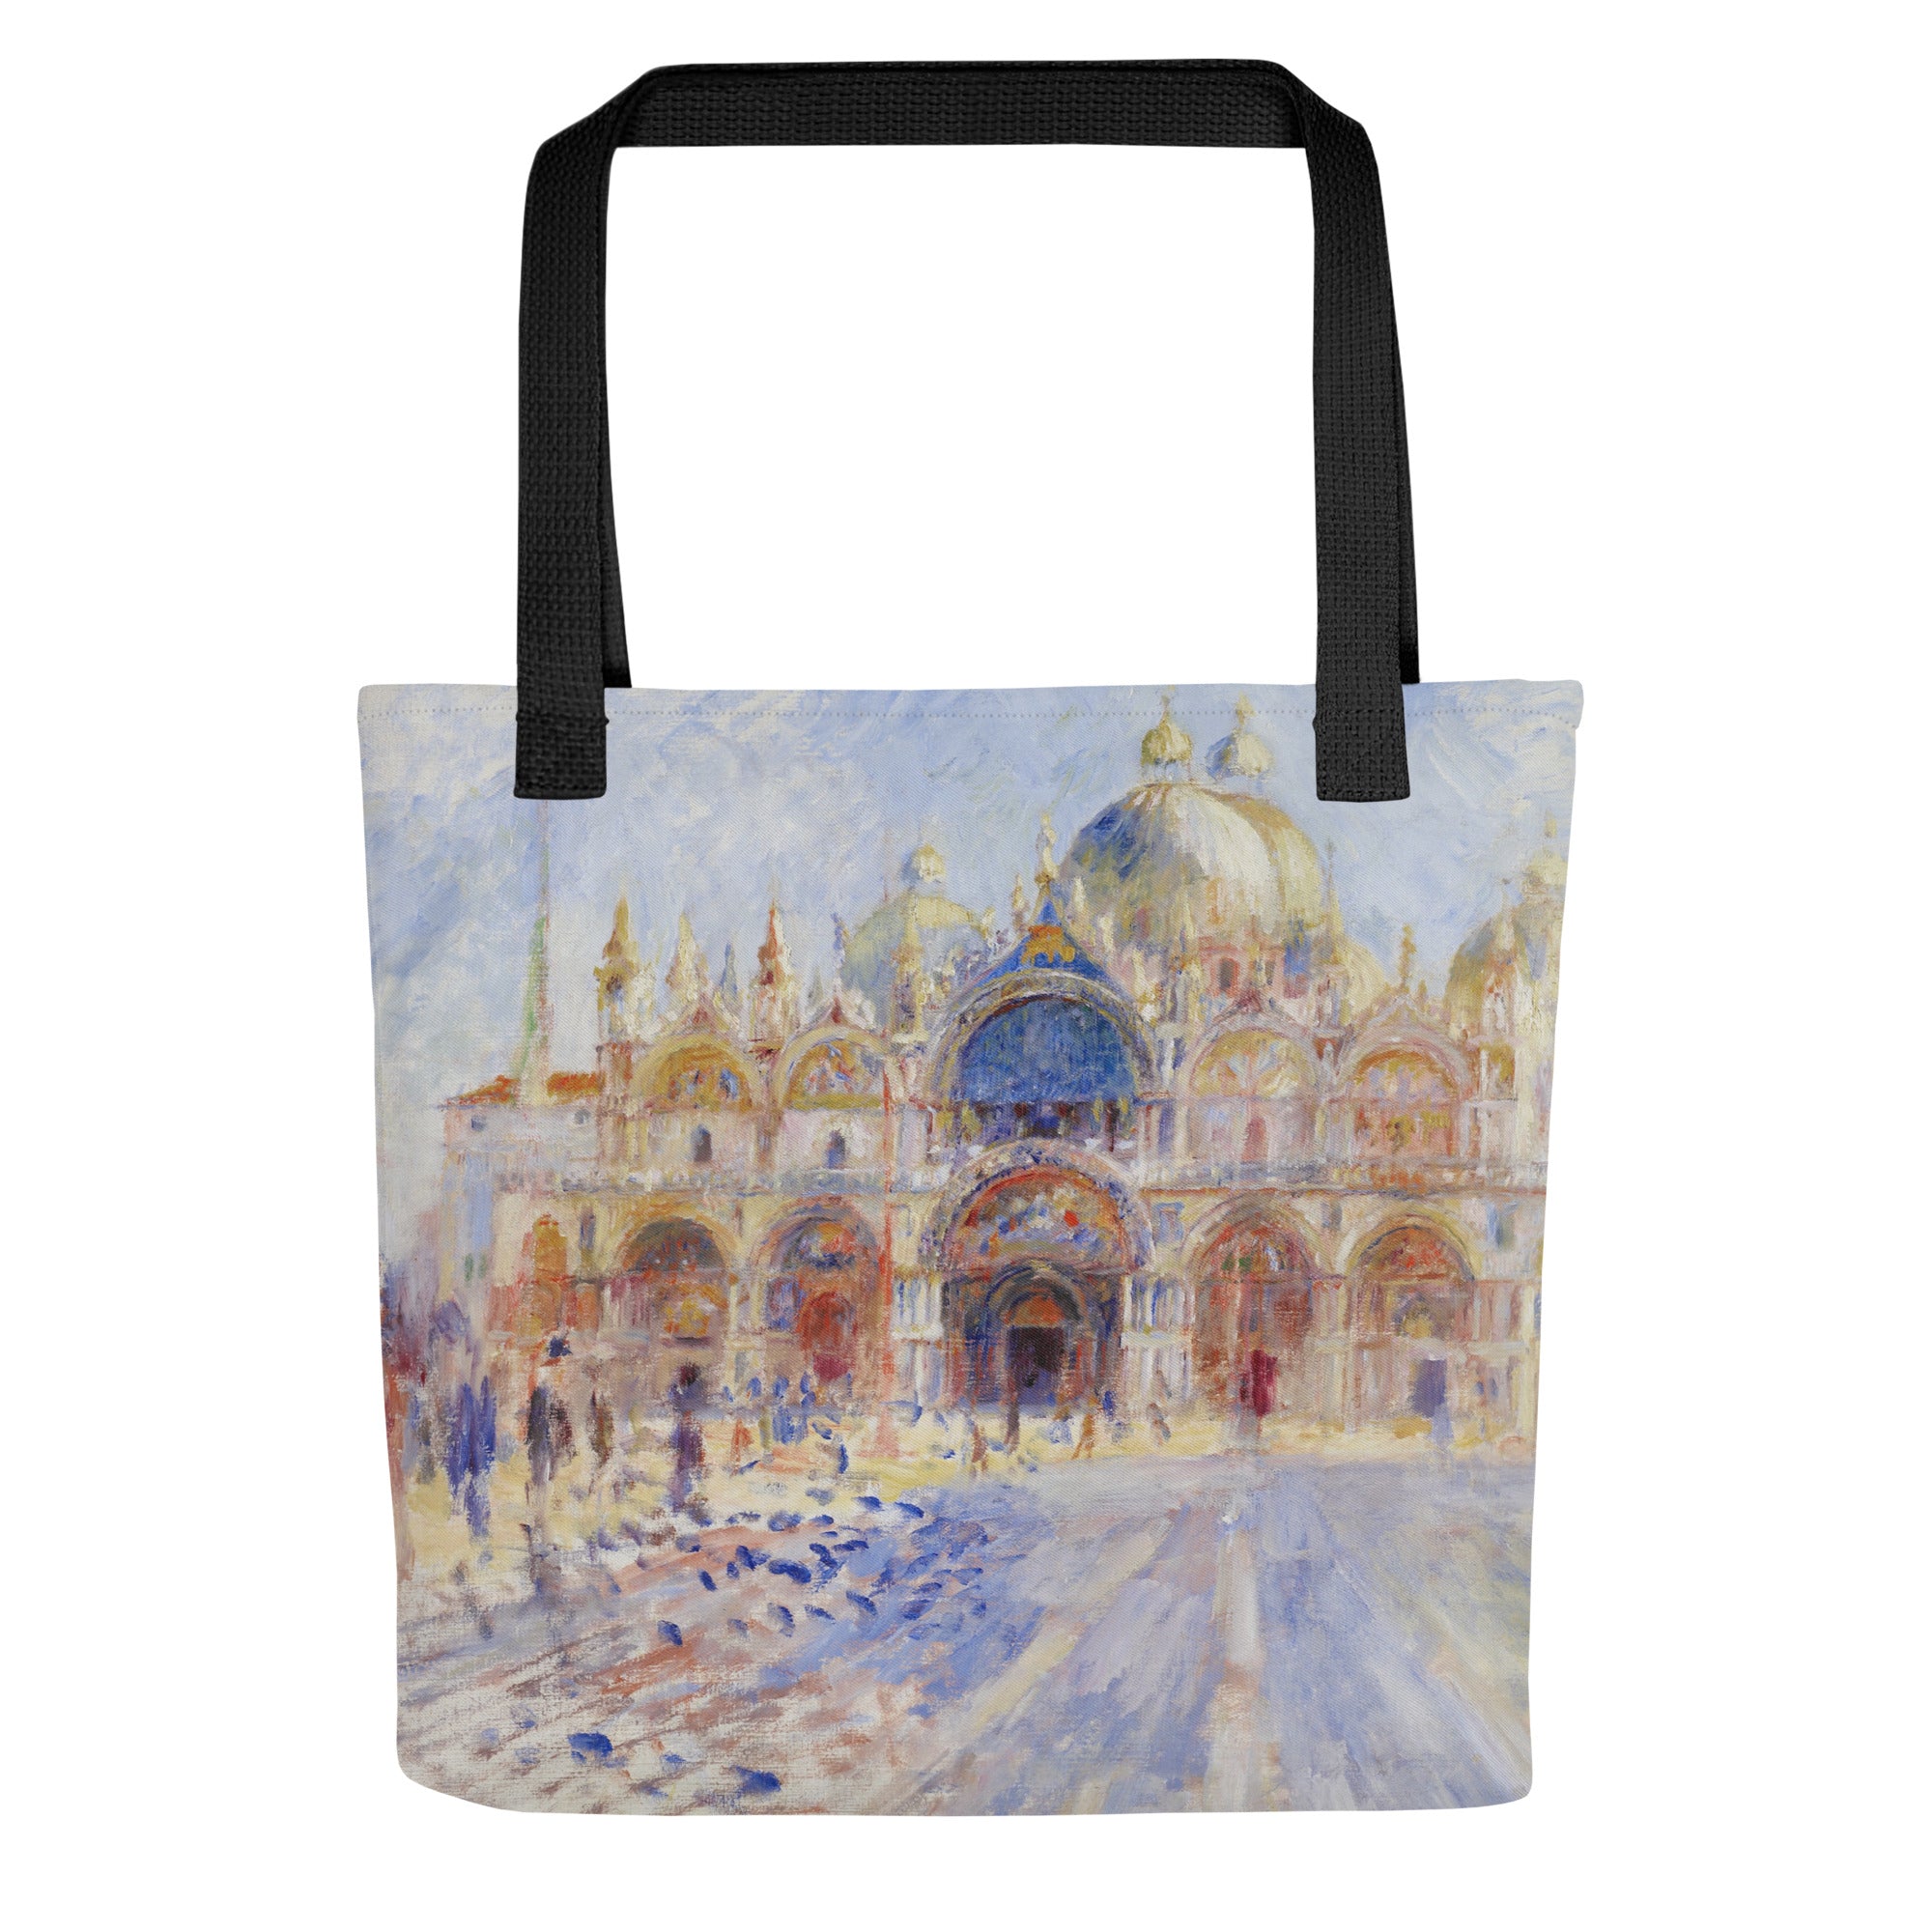 Tragetasche mit berühmtem Gemälde „Der Markusplatz, Venedig“ von Pierre-Auguste Renoir | Tragetasche mit Allover-Kunstdruck